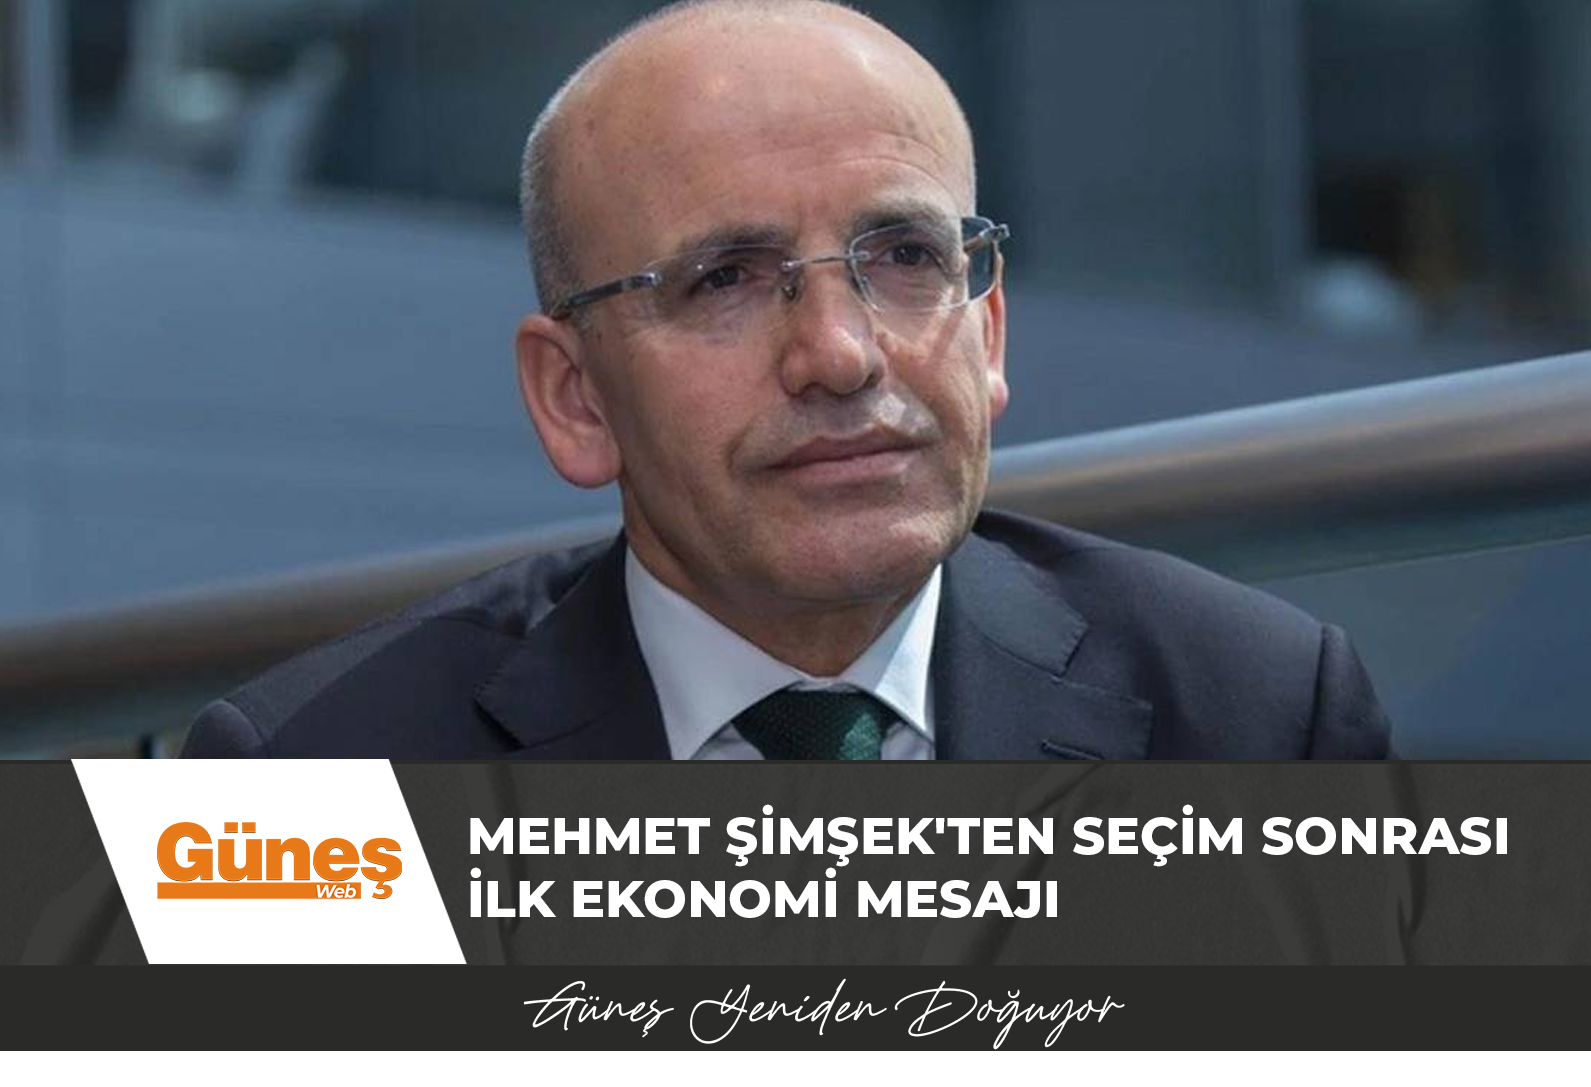 Mehmet Şimşek’ten seçim sonrası ilk ekonomi mesajı